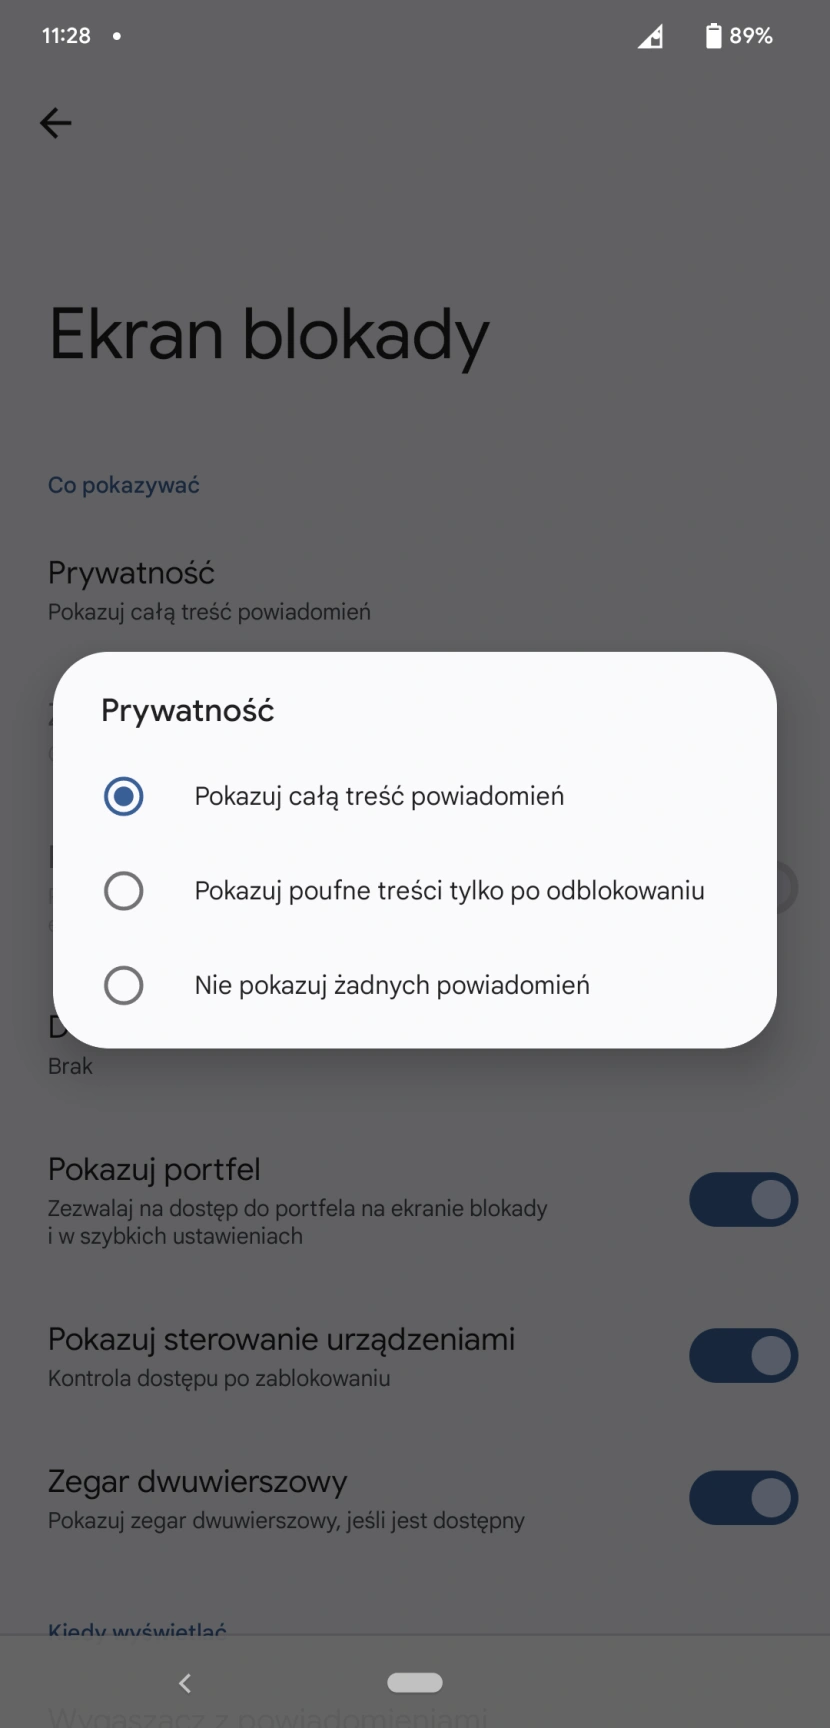 Ograniczenie dostępu do powiadomień na ekranie blokady
fot. Daniel Olszewski / Computerworld.pl